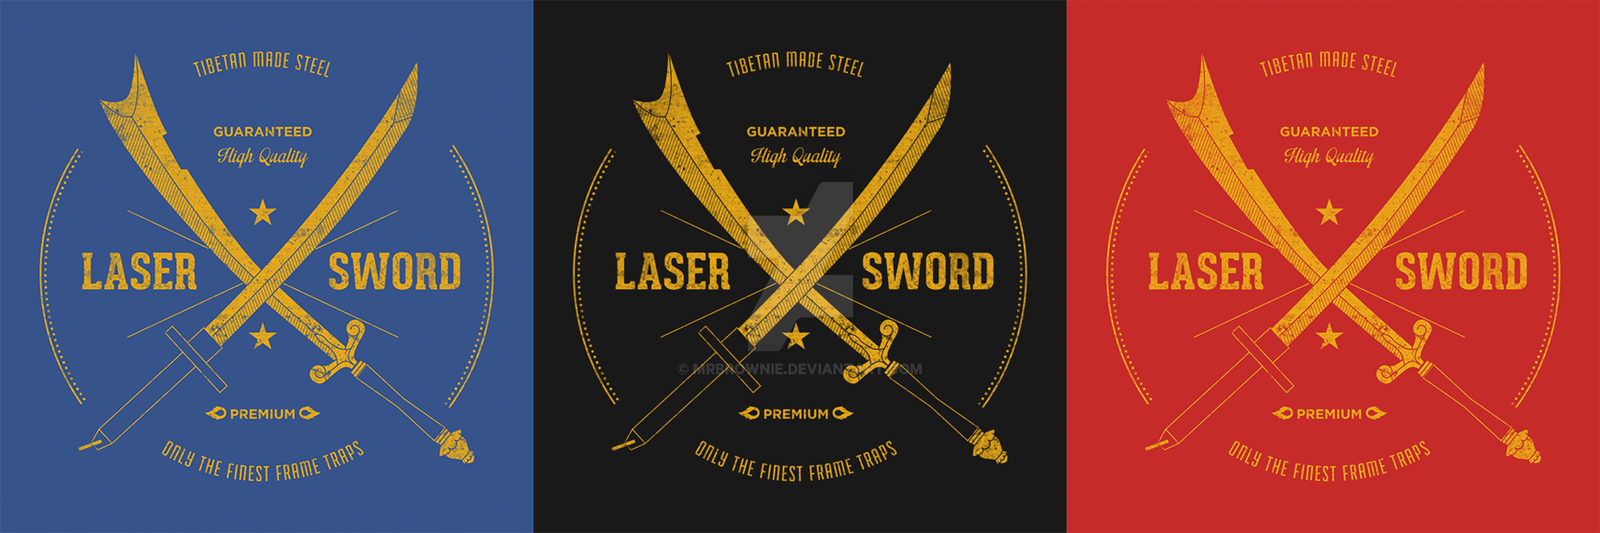 Tibetan Steel Laser Sword T-shirt by mrbrownie